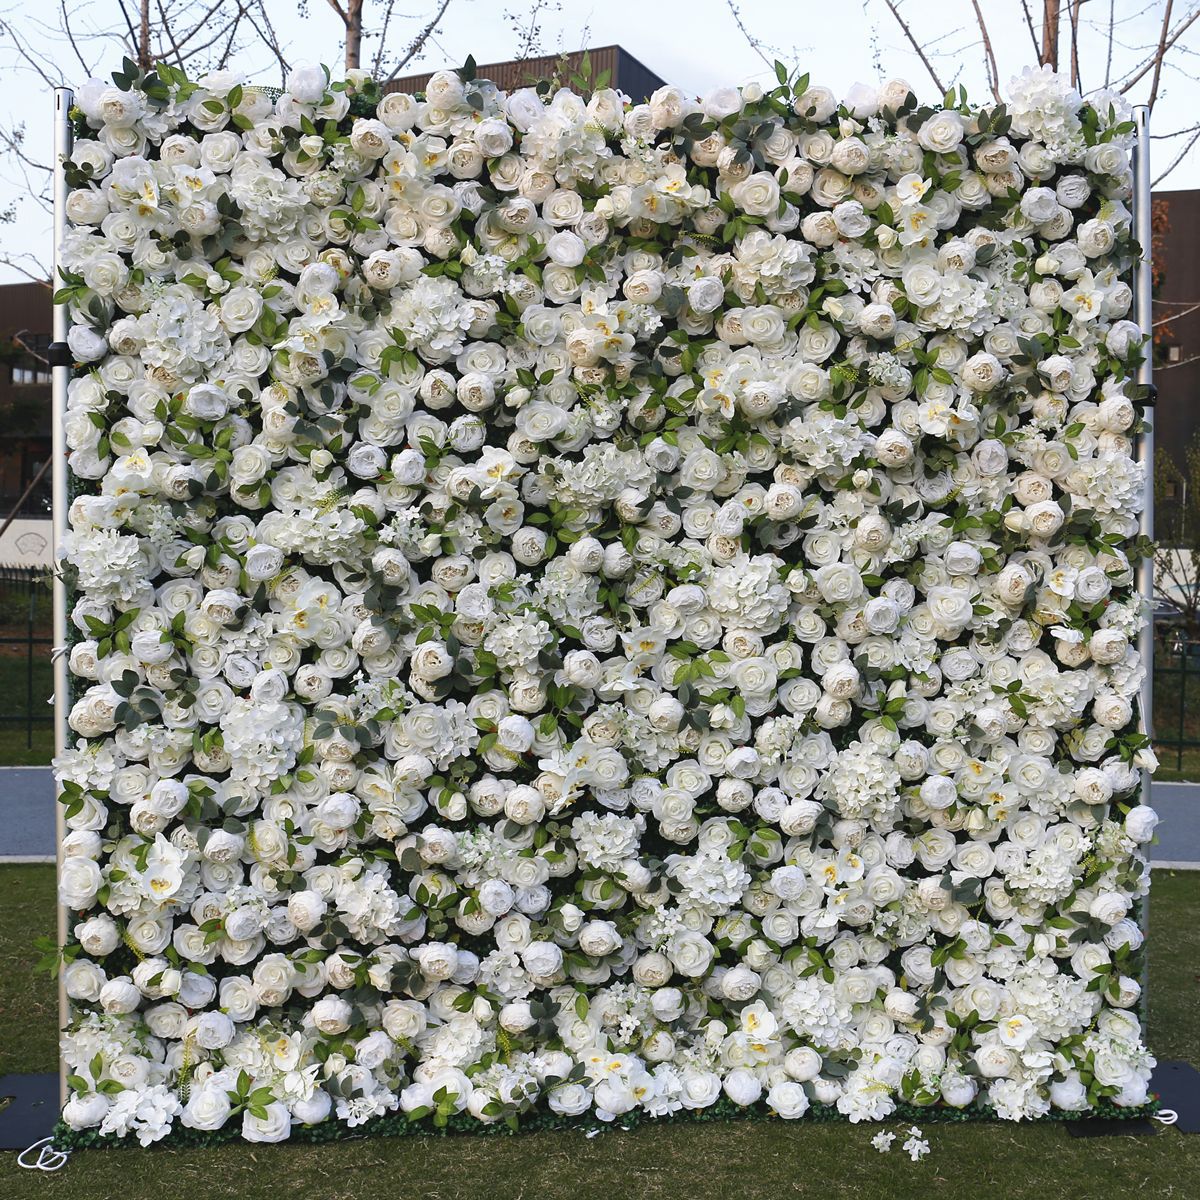 Kain putih tembok latar mburi tembok kembang ngisor Wedding simulasi kembang Wedding mall dekorasi jendela latar mburi tembok kembang peony